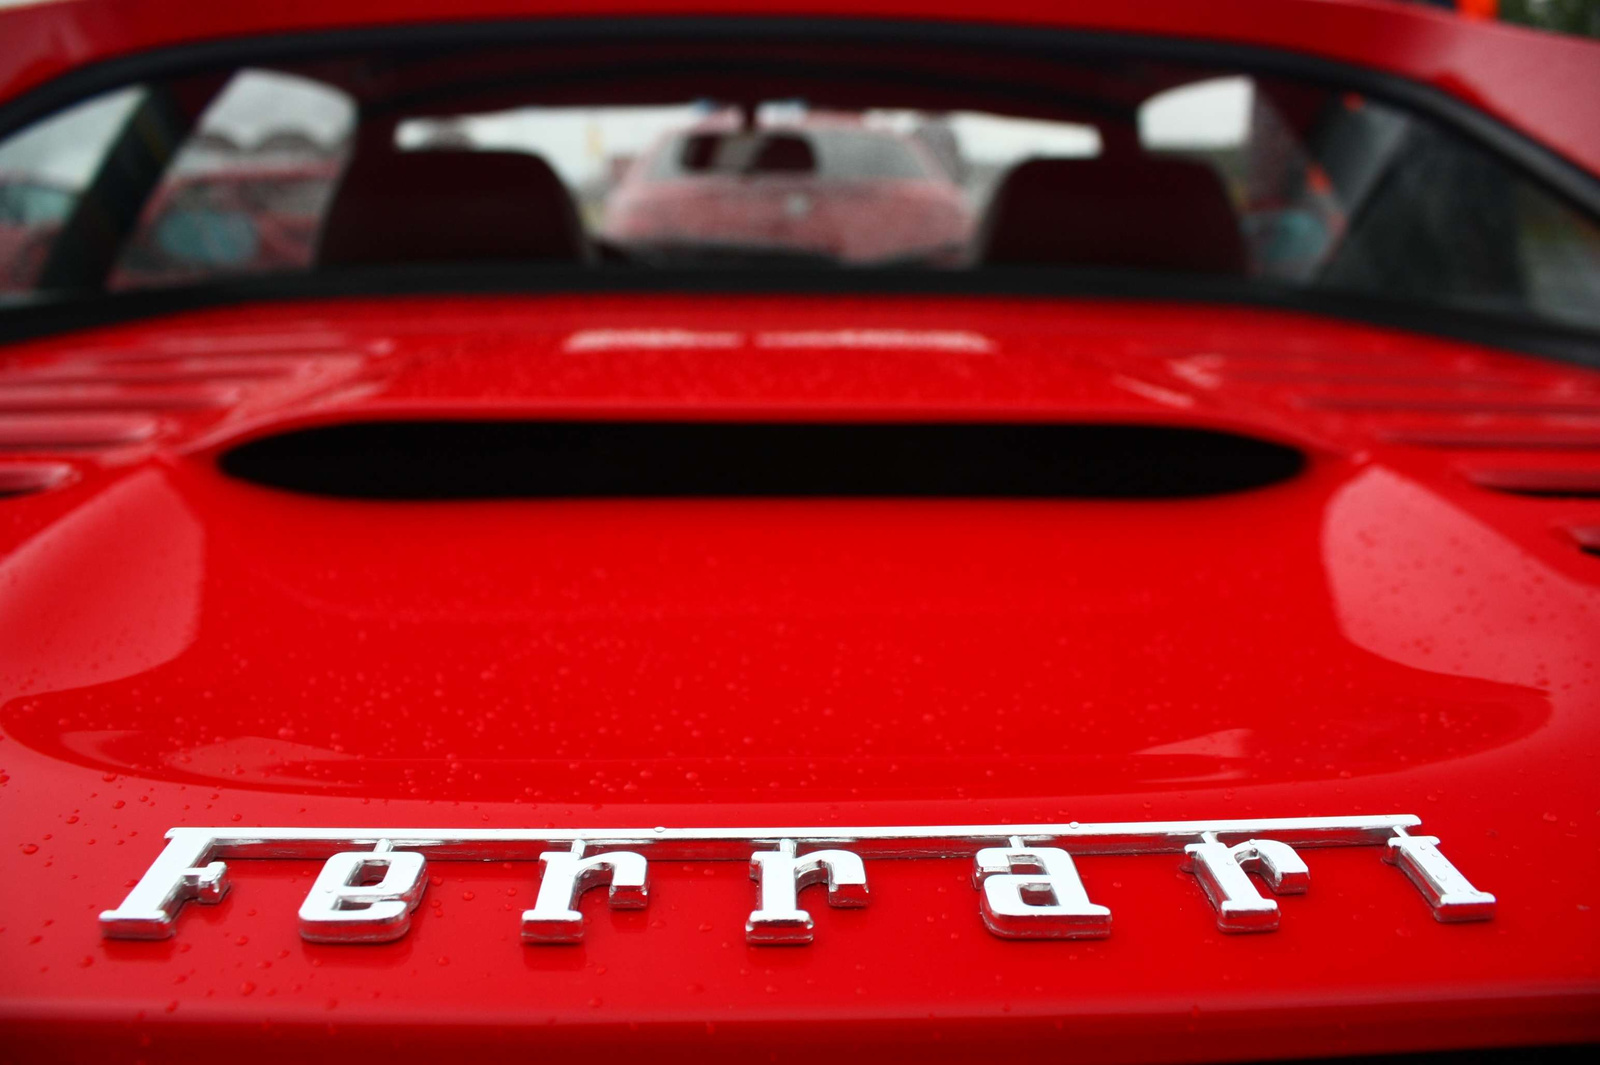 Ferrari 355 F1 GTS